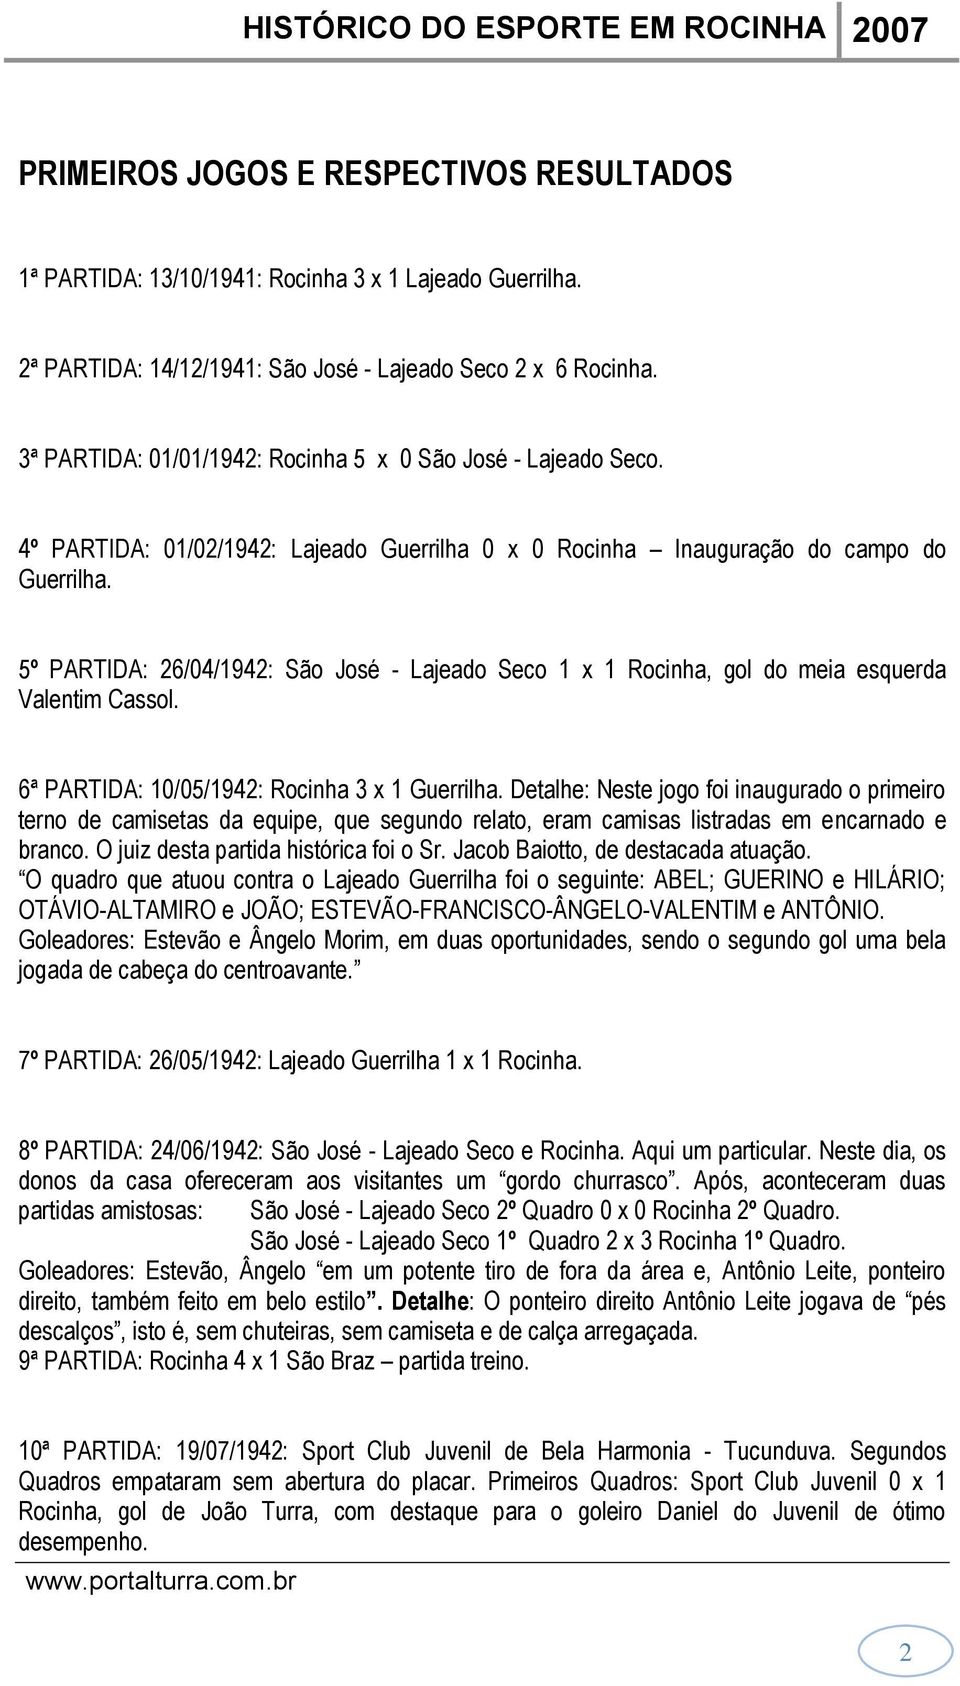 5º PARTIDA: 26/04/1942: São José - Lajeado Seco 1 x 1 Rocinha, gol do meia esquerda Valentim Cassol. 6ª PARTIDA: 10/05/1942: Rocinha 3 x 1 Guerrilha.